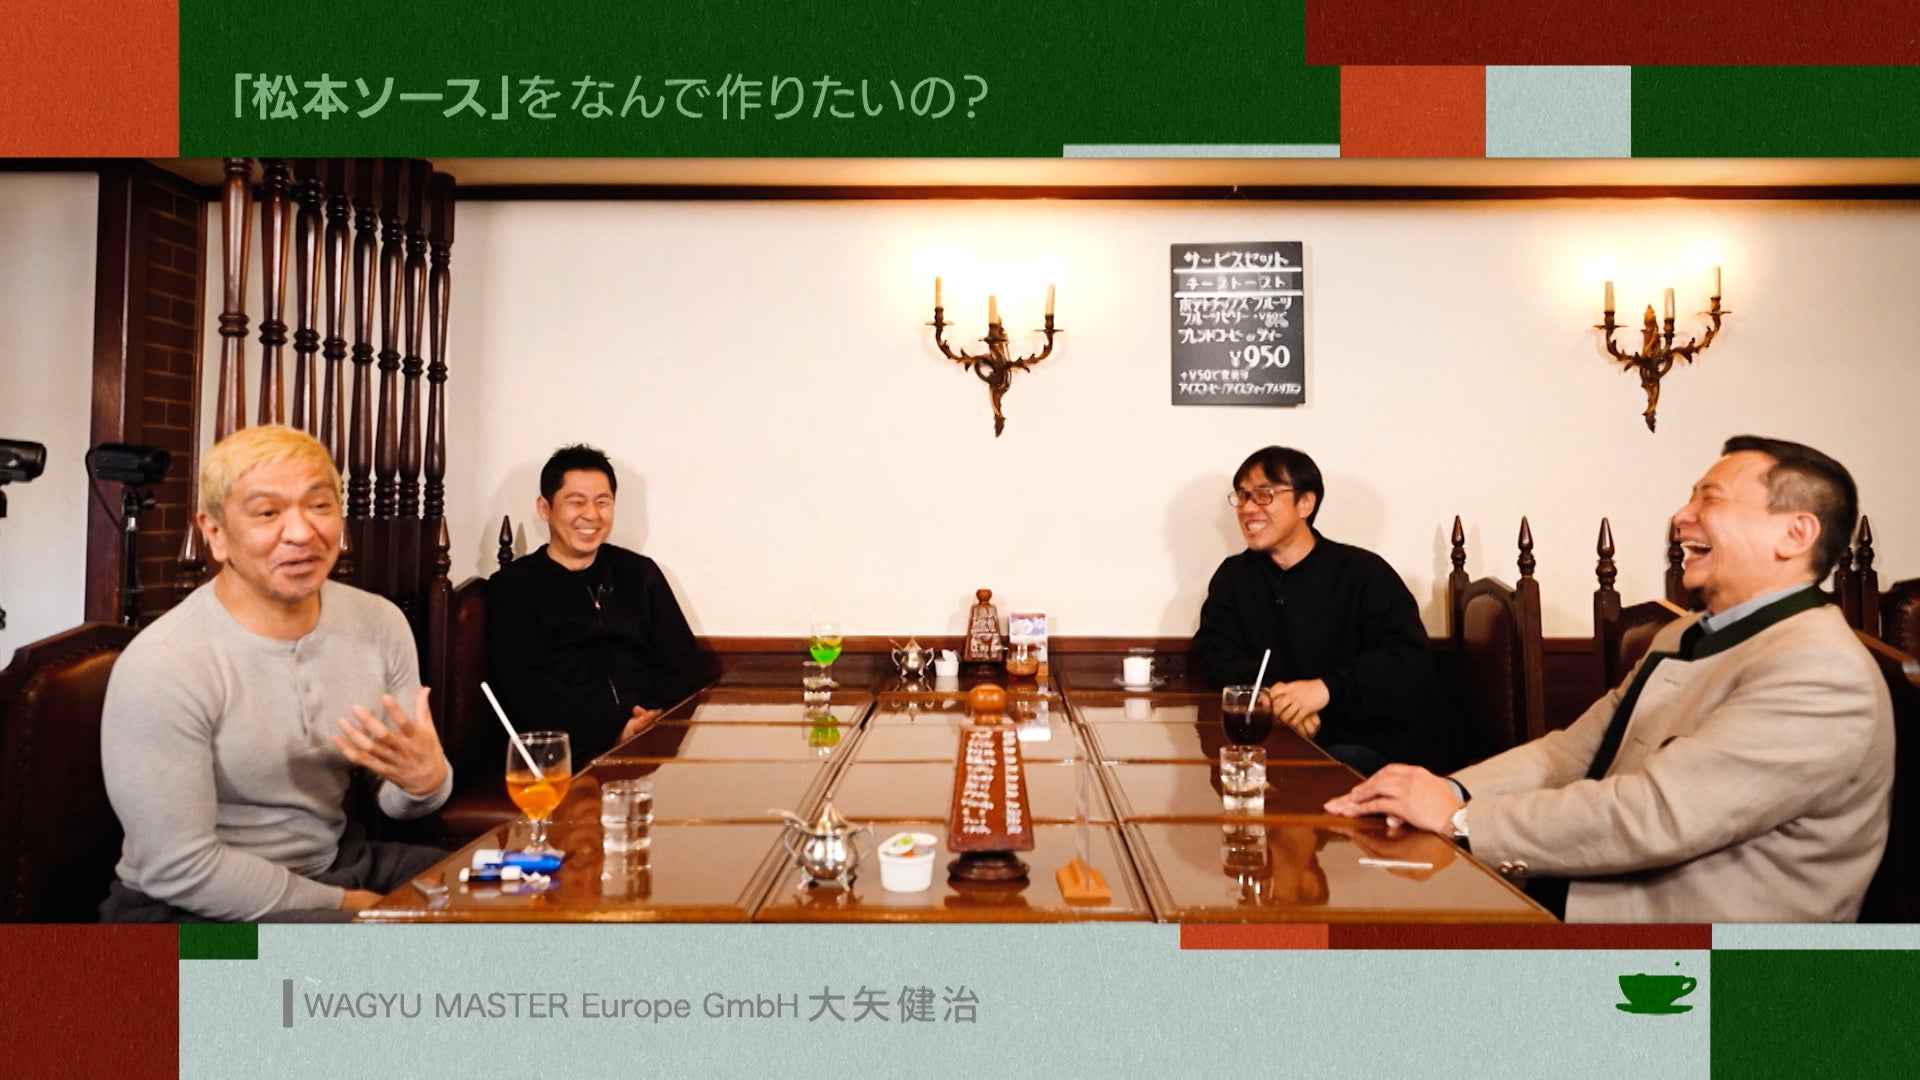 松本人志、「『松本ソース』を作りたい」“ヨーロッパの和牛王”からの提案に不信感!?「お茶とおっさん」のサブ画像2